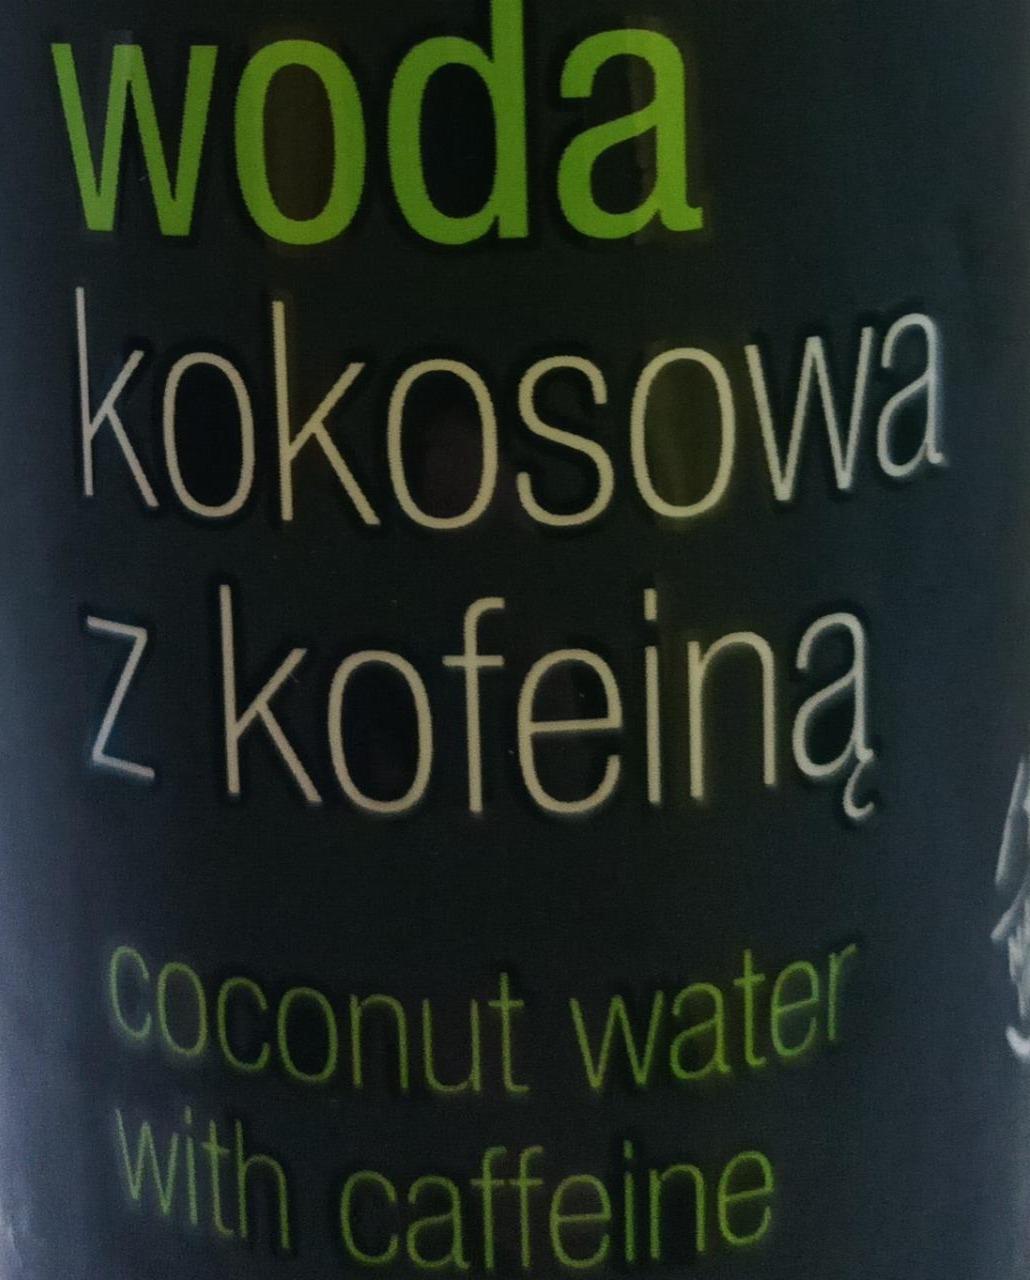 Фото - Woda kokosowa z kofeina QF